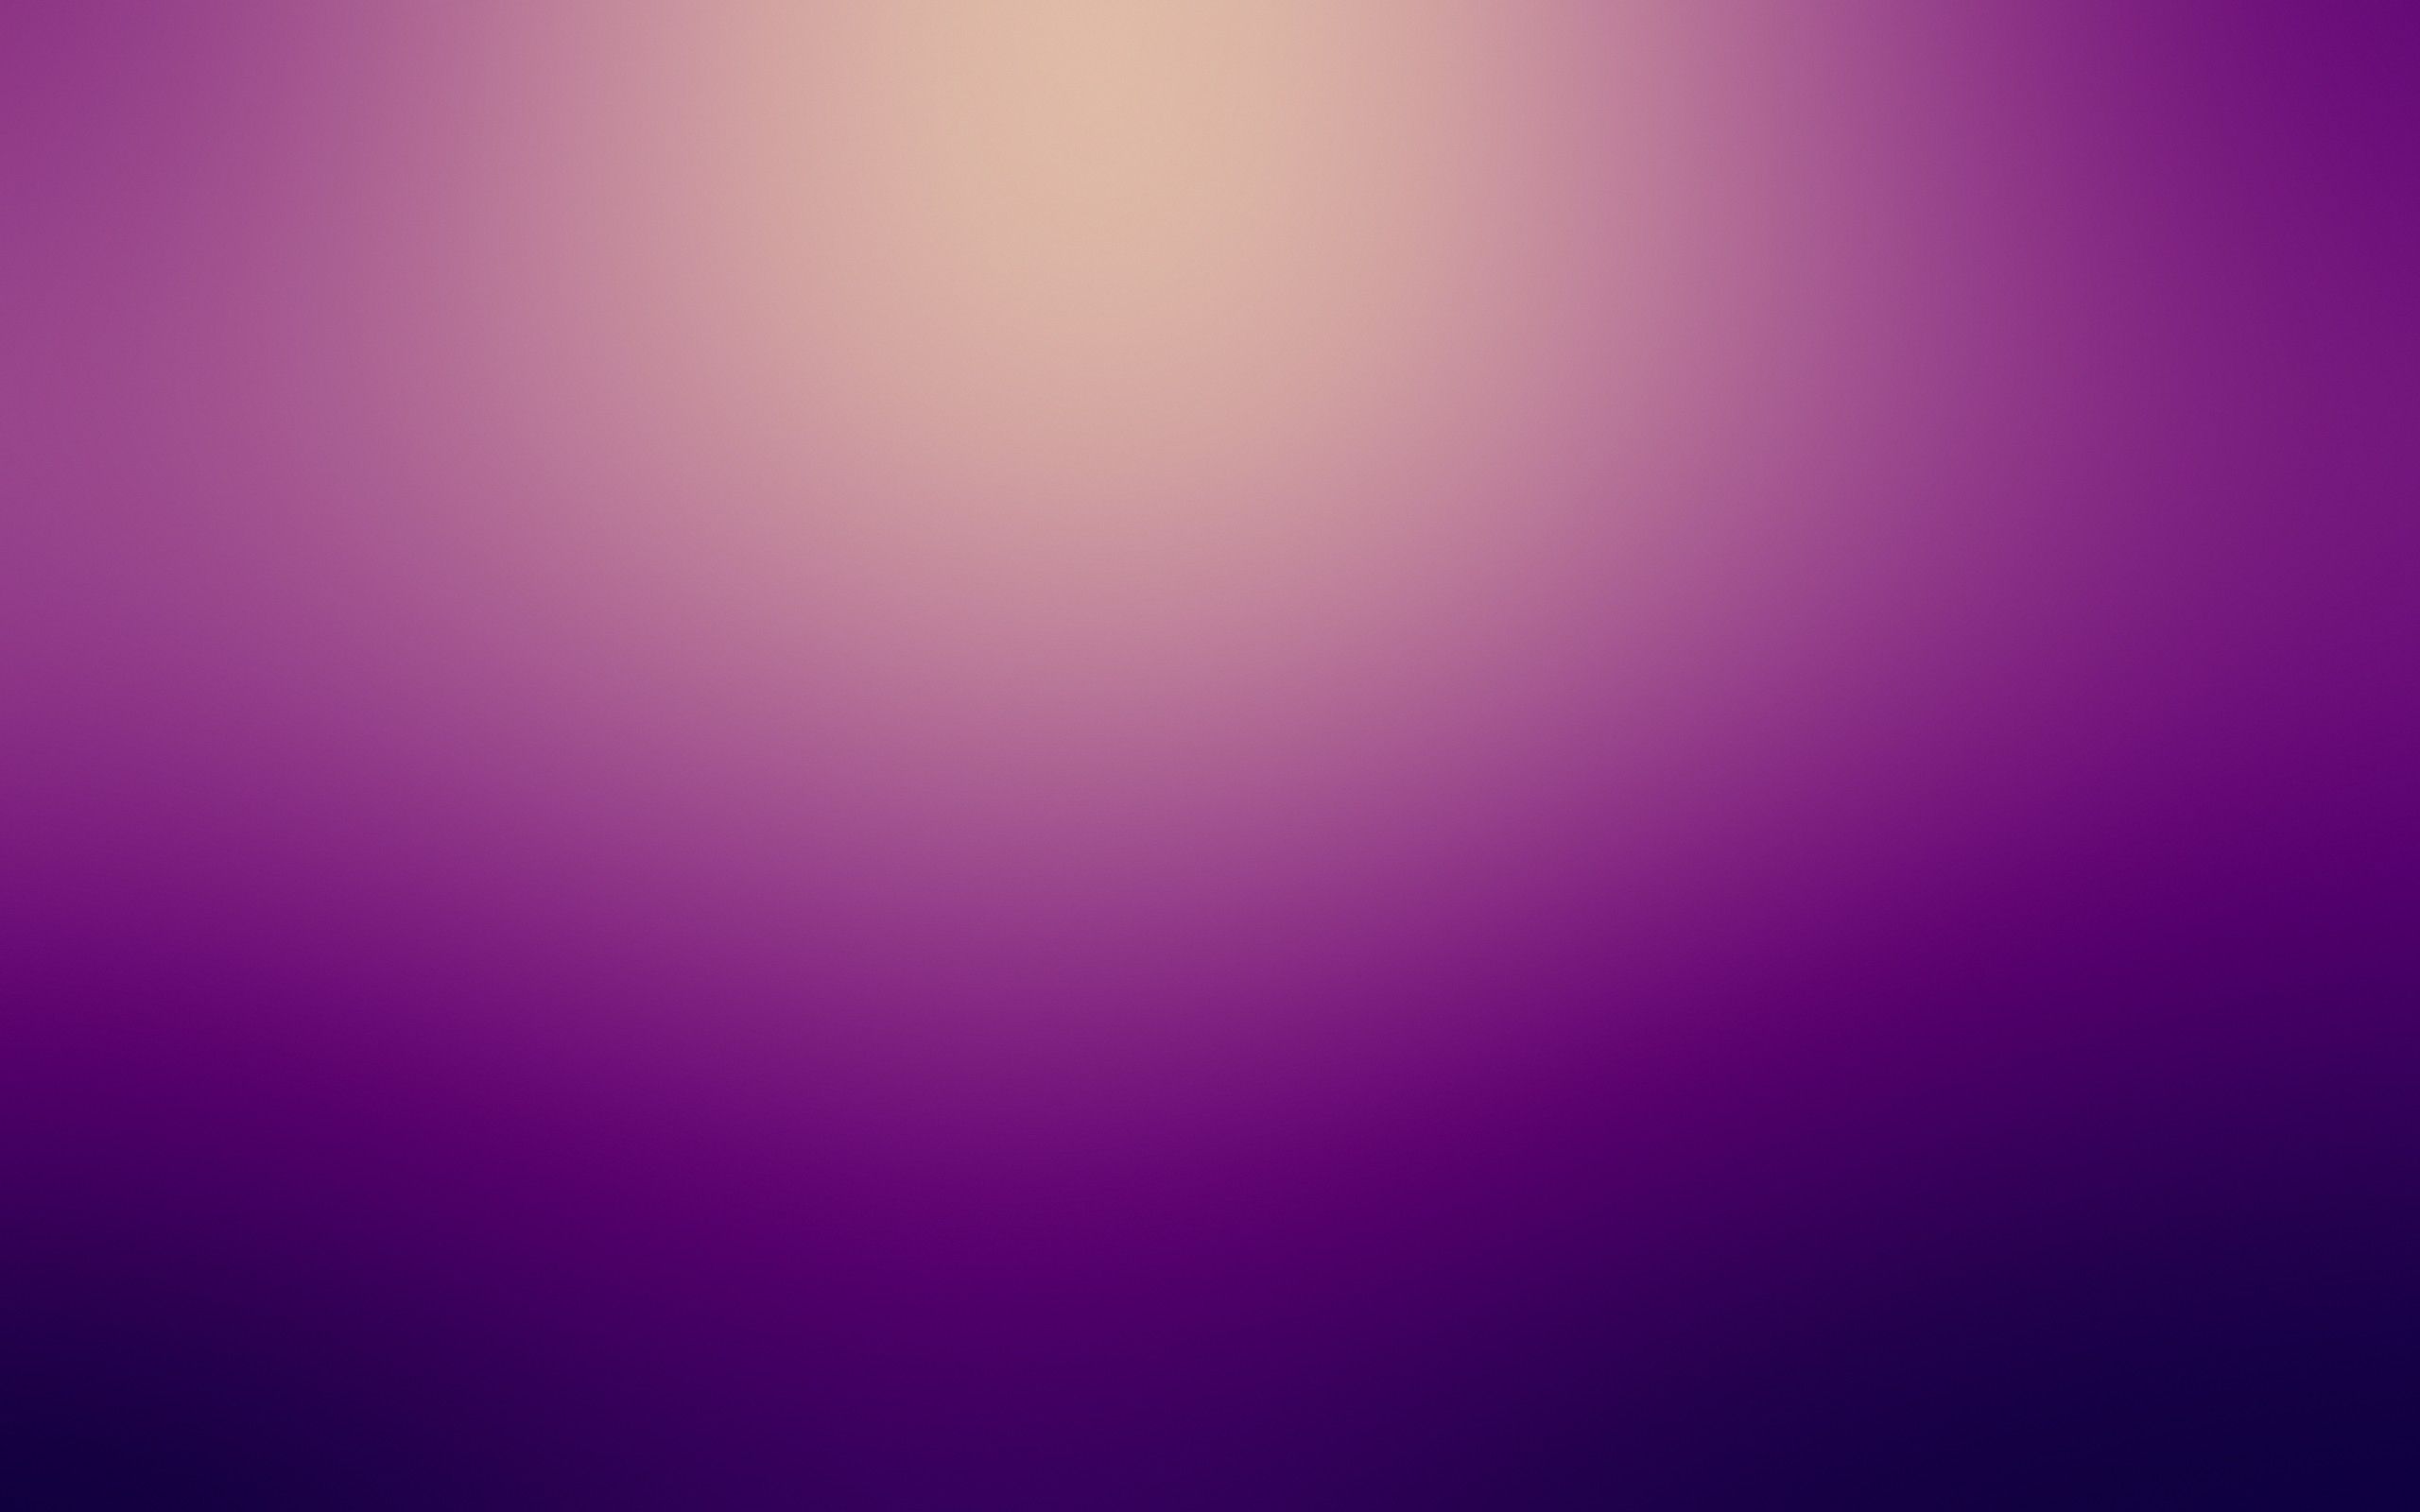 Purple gaussian blur backgrounds wallpaper 2560x1600 21636